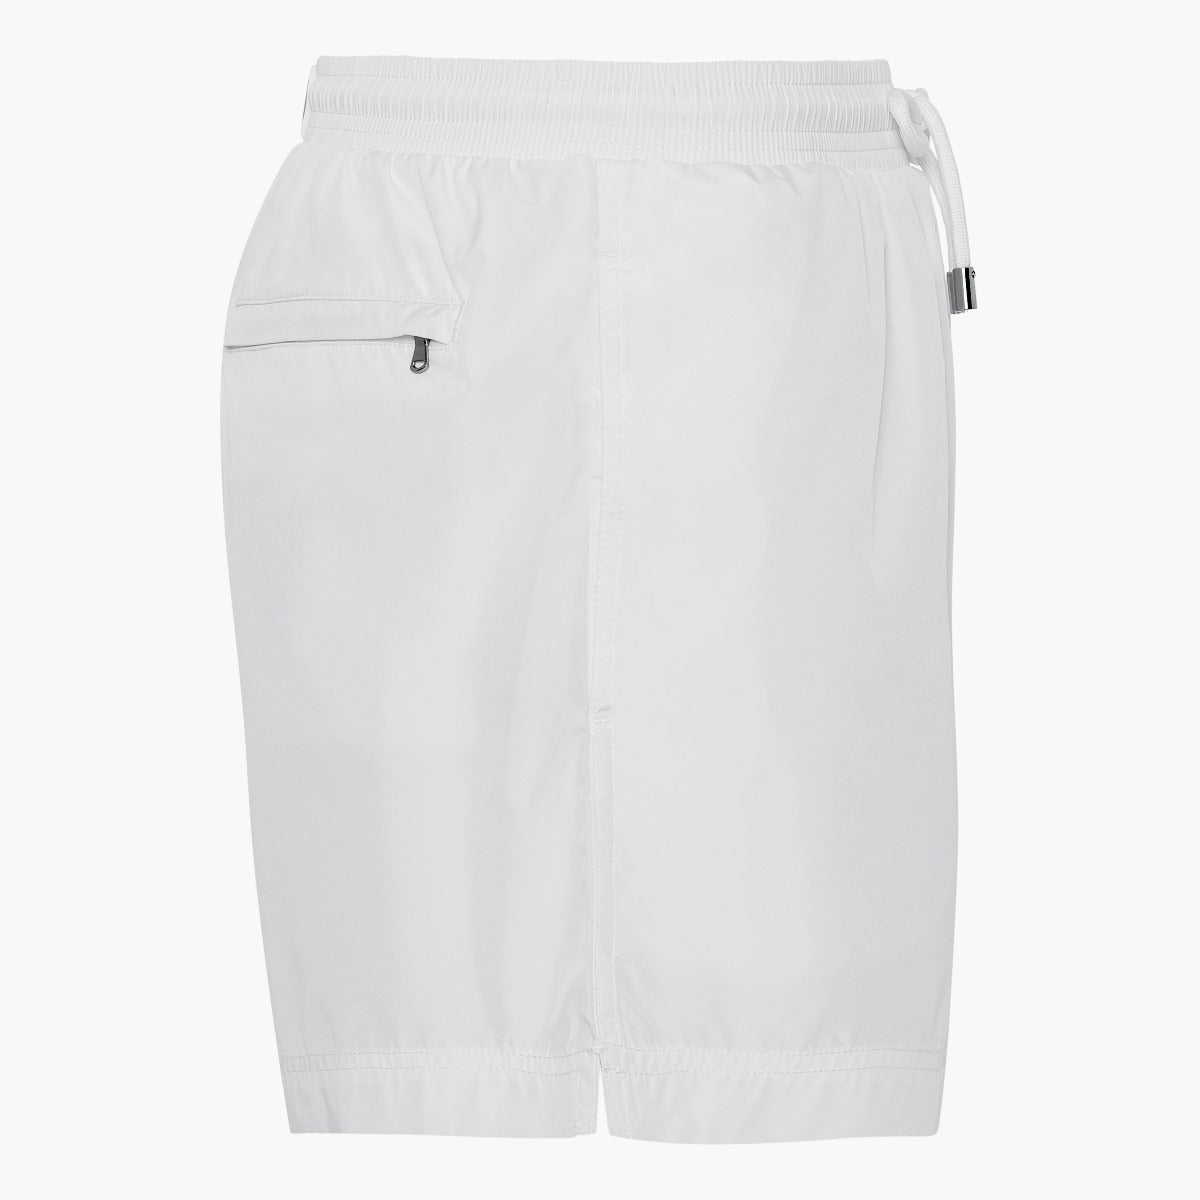 White swim shorts – MARDA SWIMWEAR